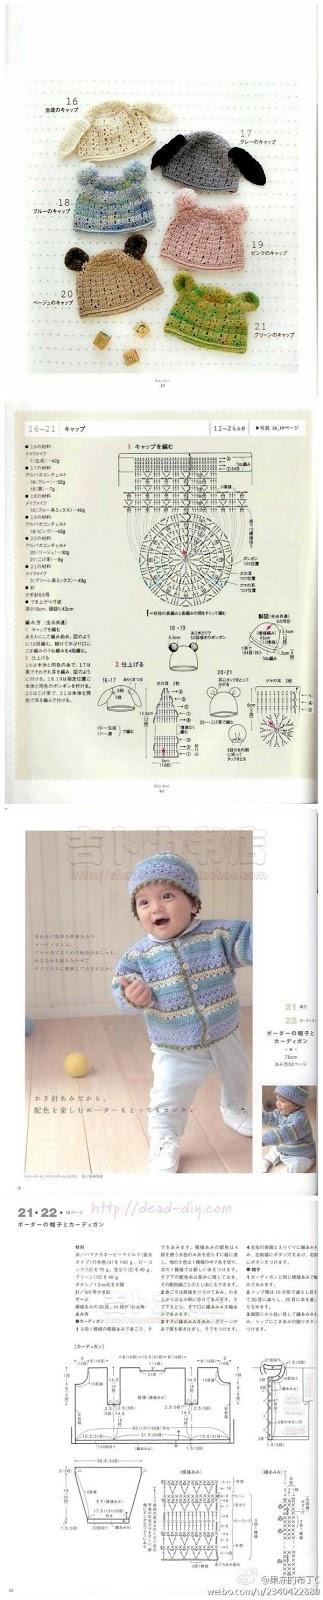 A gentile richiesta...schemi di cappelli crochet con paraorecchi per bimbi / Crochet hats for kids with earflaps, free charts